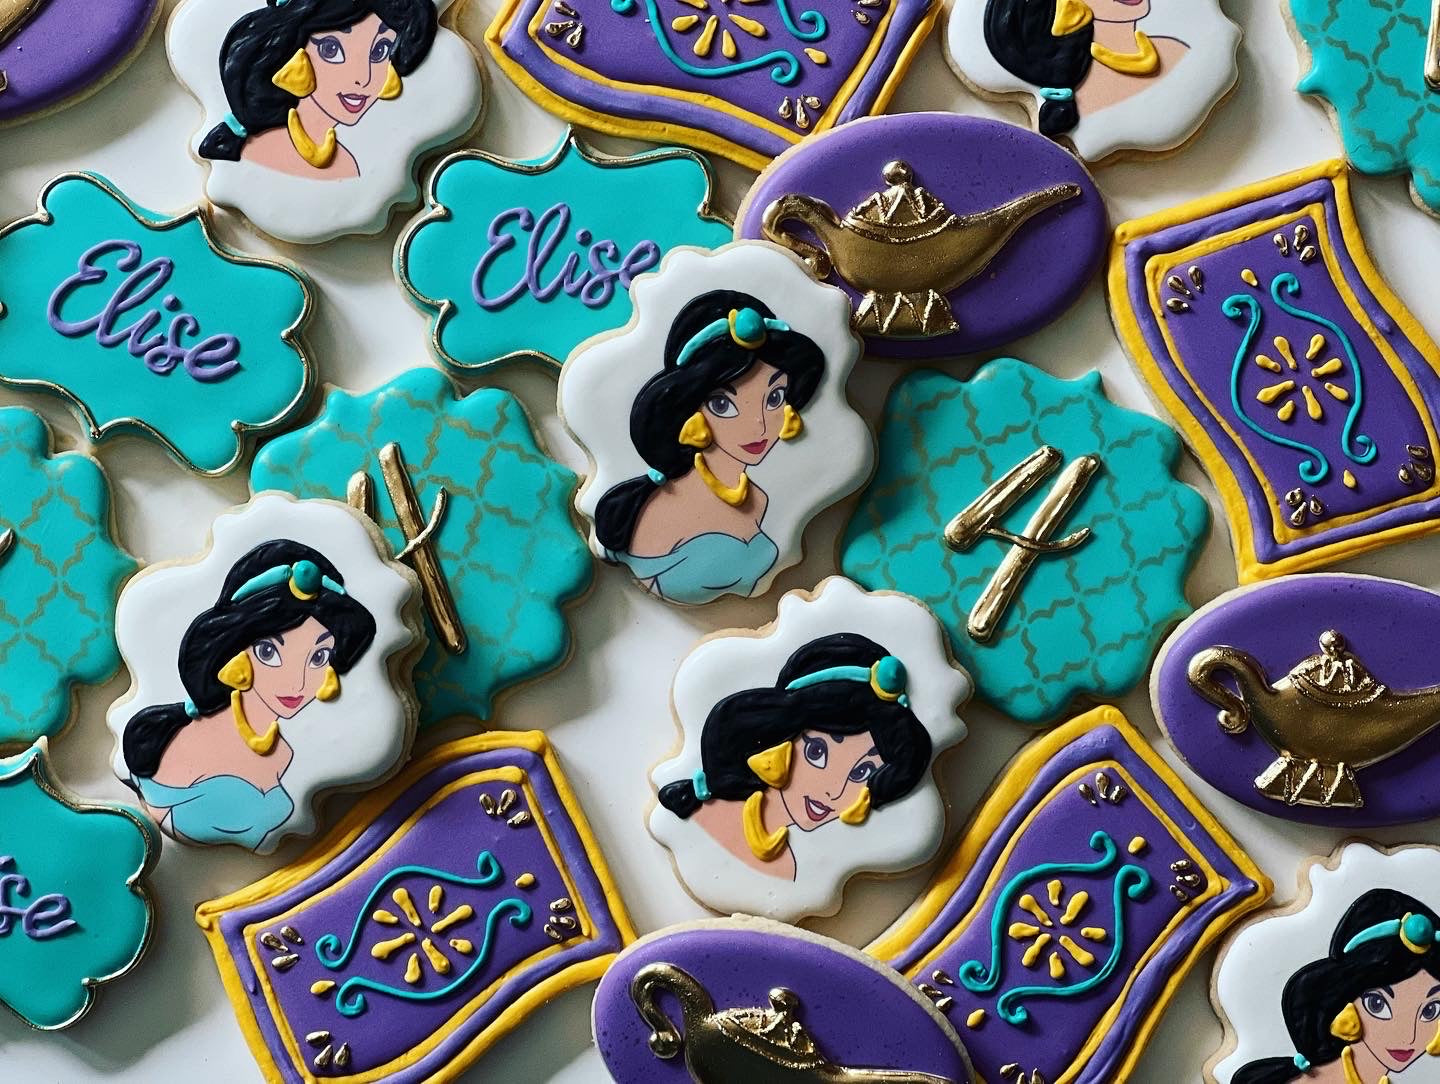 Princess Jasmine and Aladdin cake